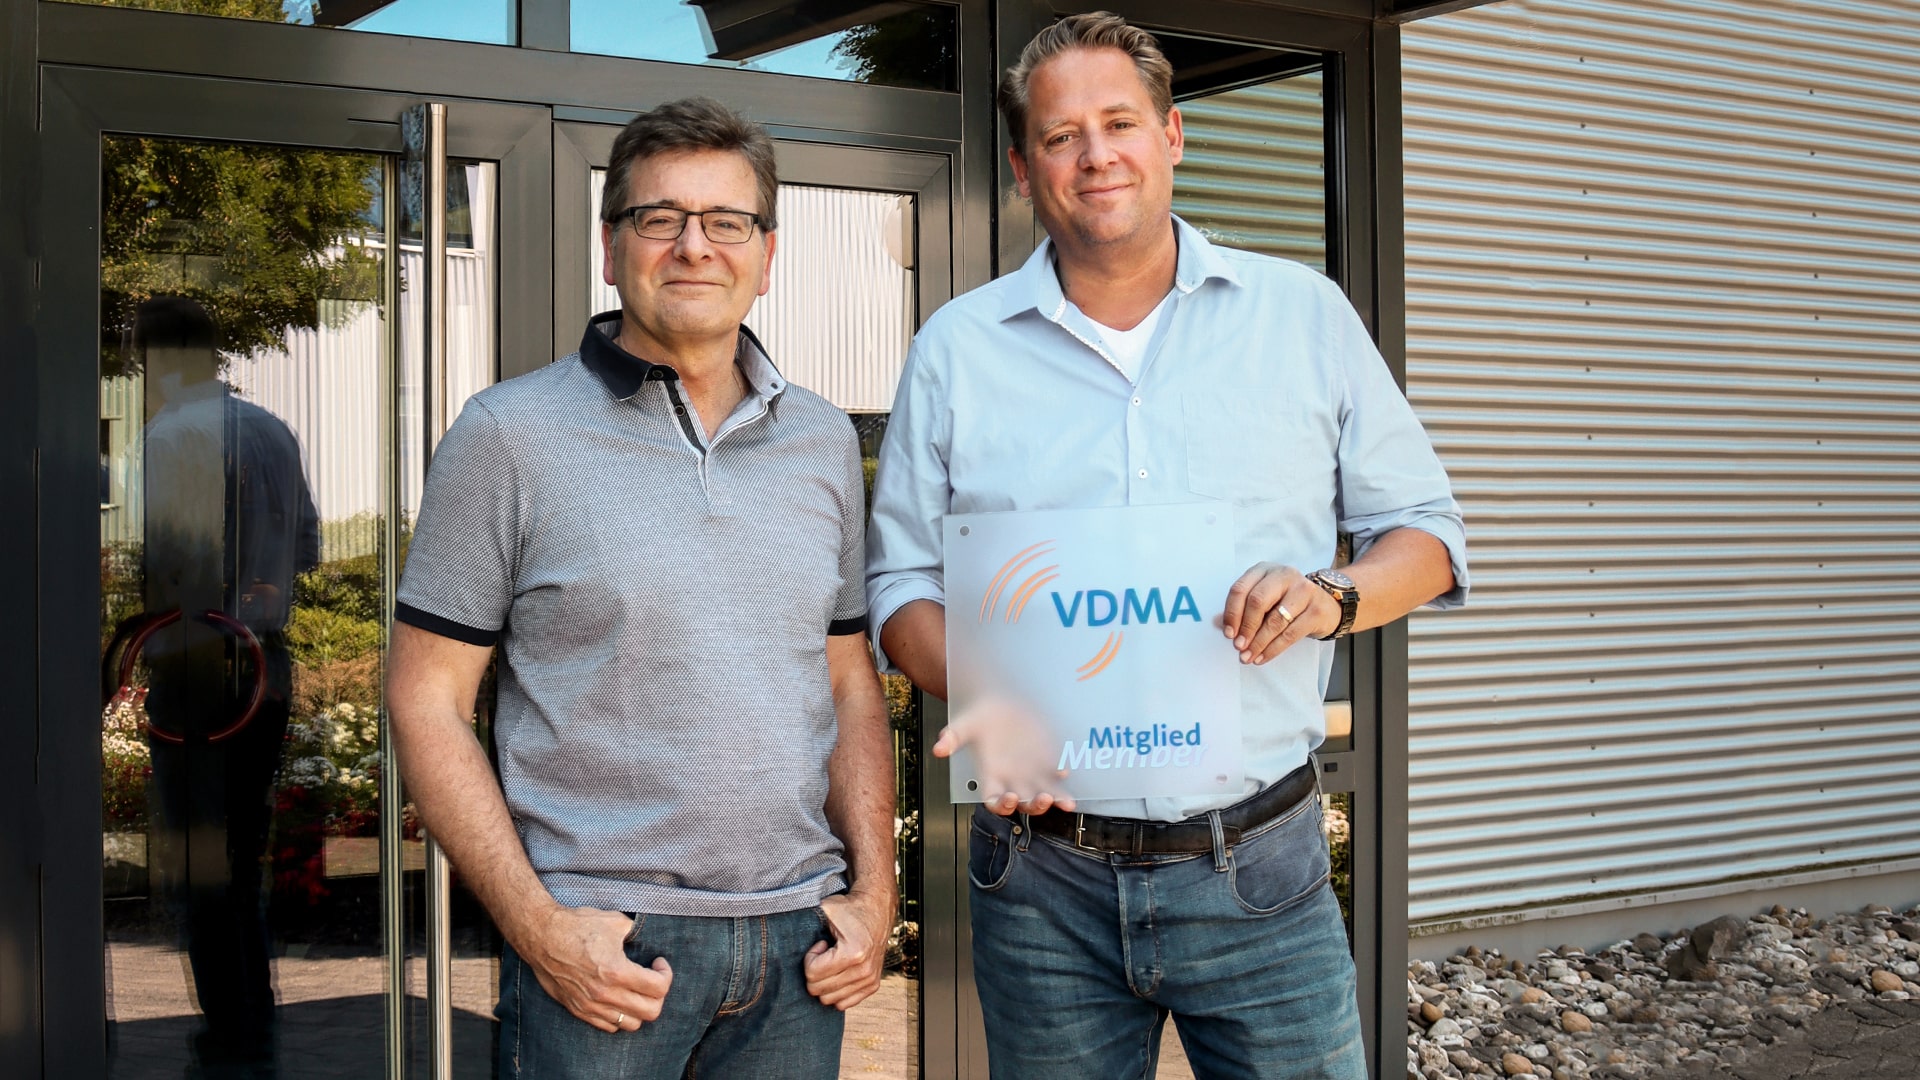 Lachmann & Rink erneuert VDMA-Mitgliedschaft